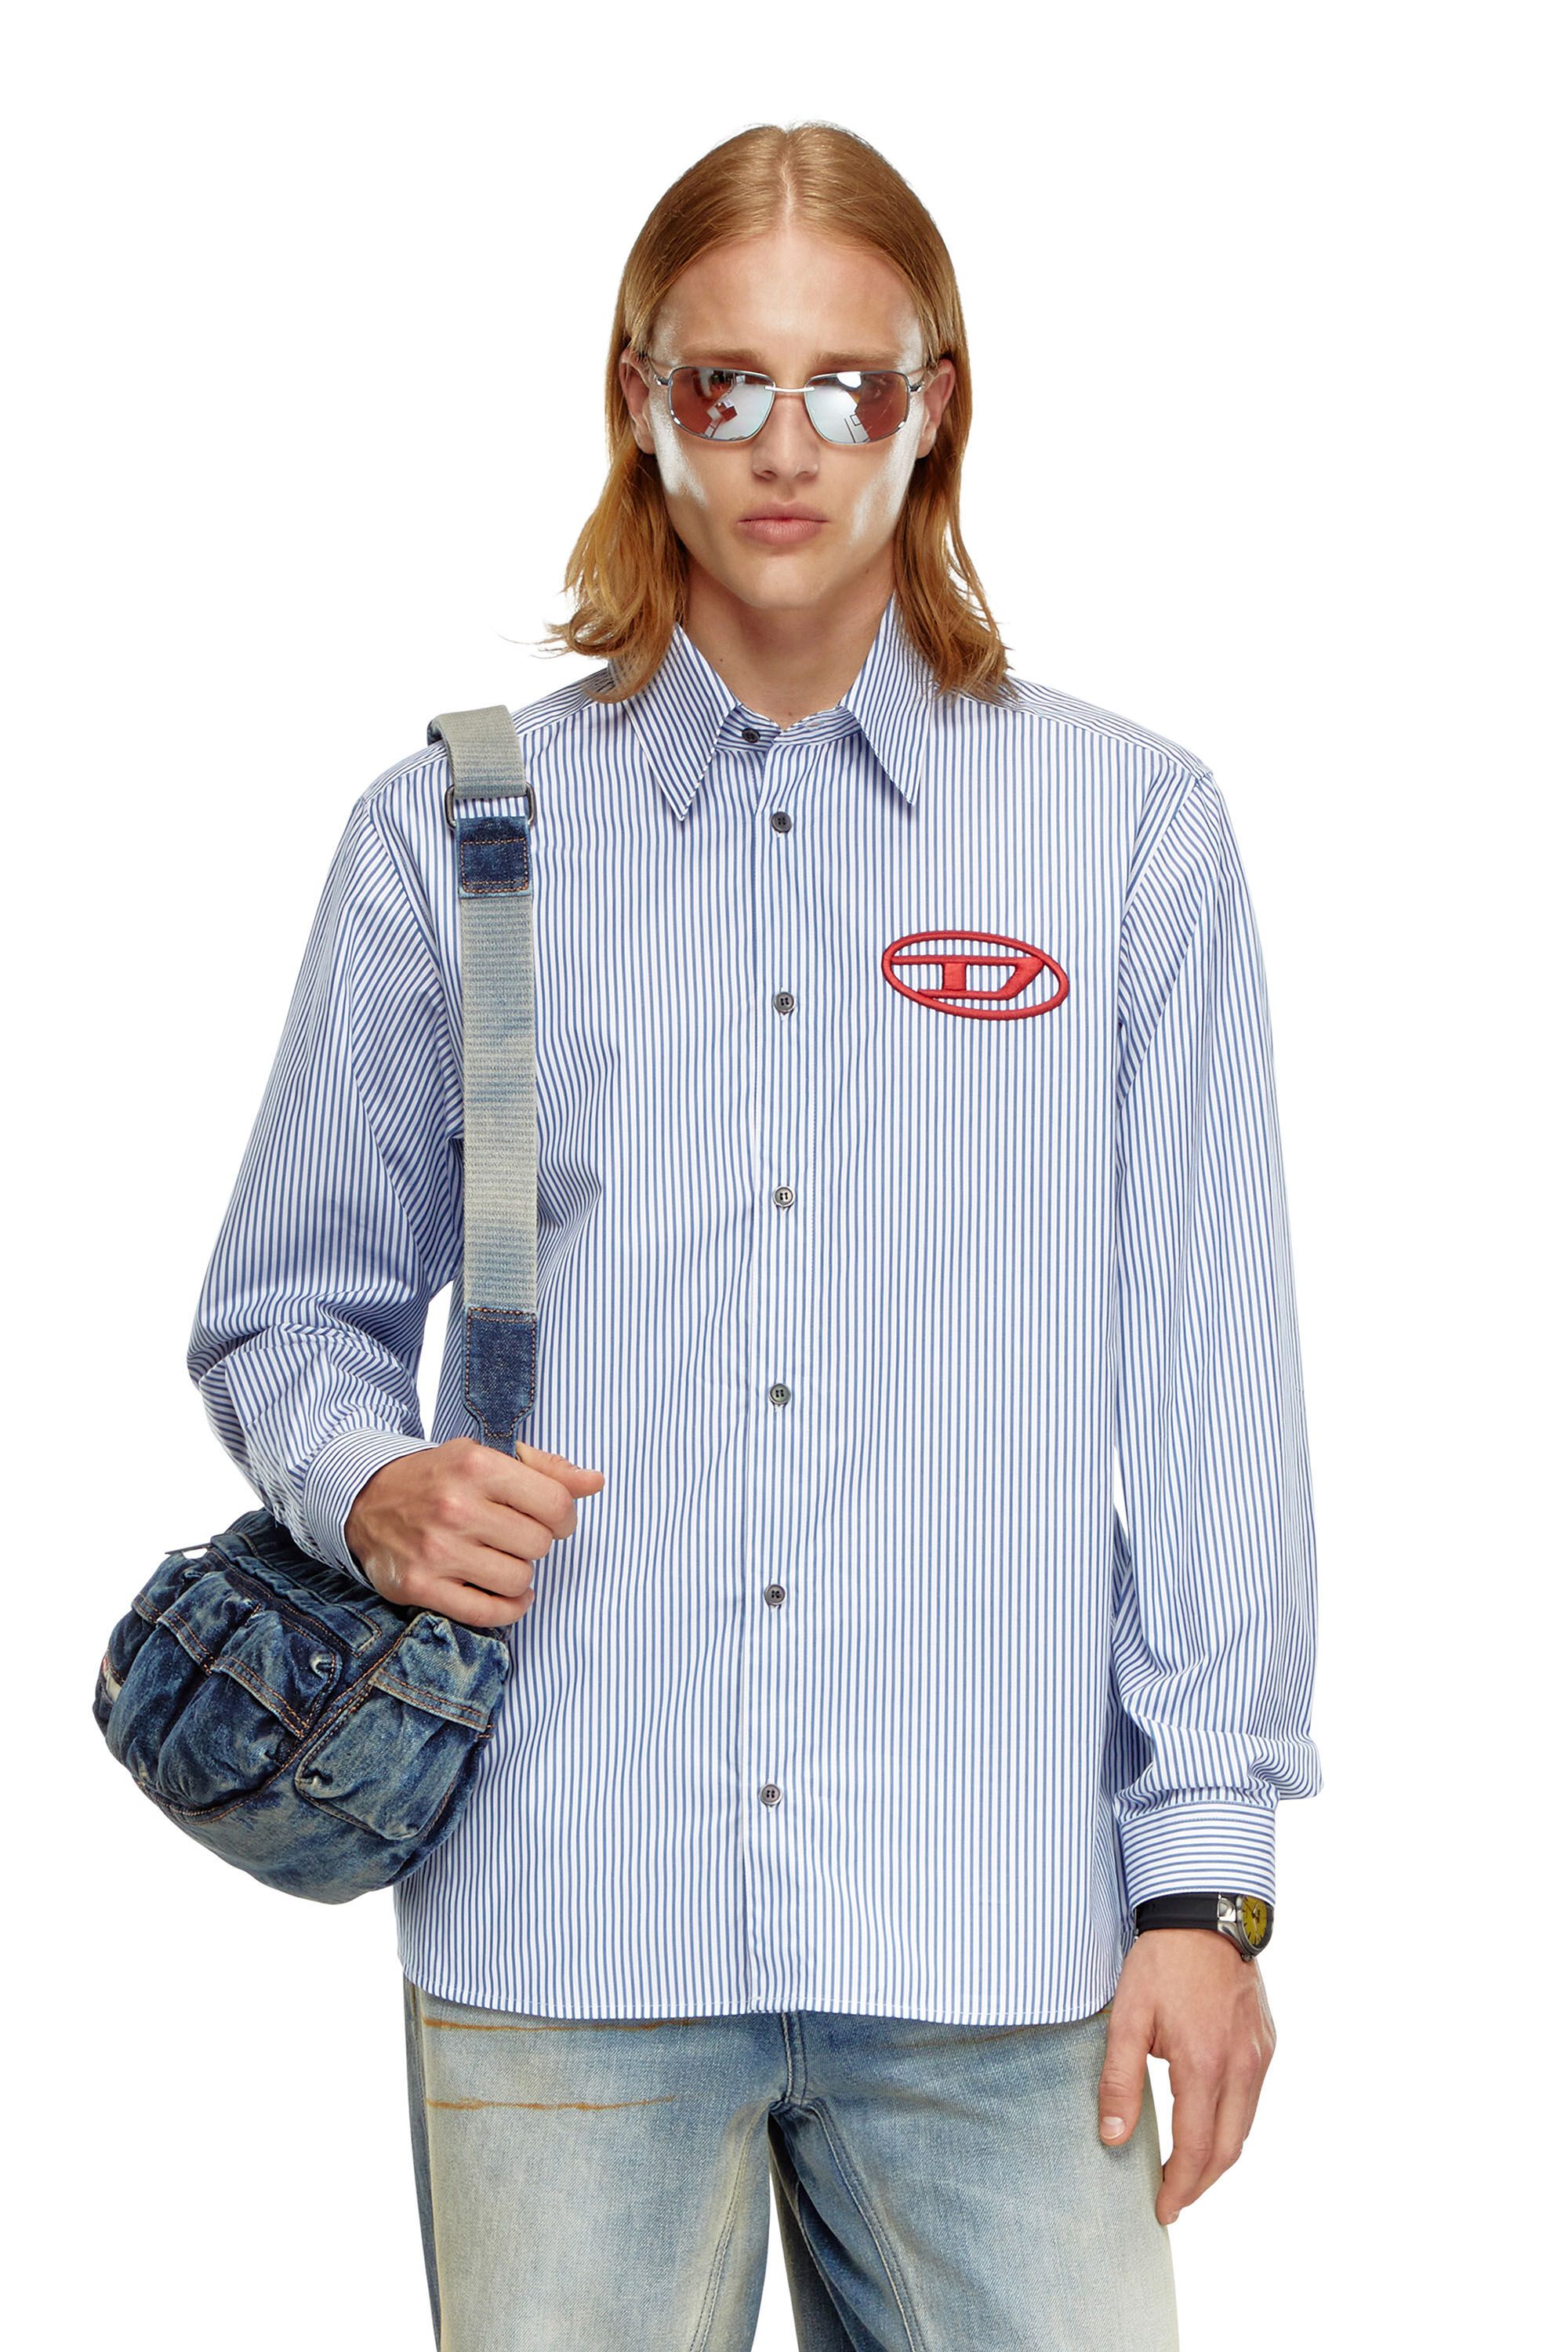 Diesel - S-SIMPLY-E, Hombre Camisa a rayas con bordado Oval D in Azul marino - Image 3